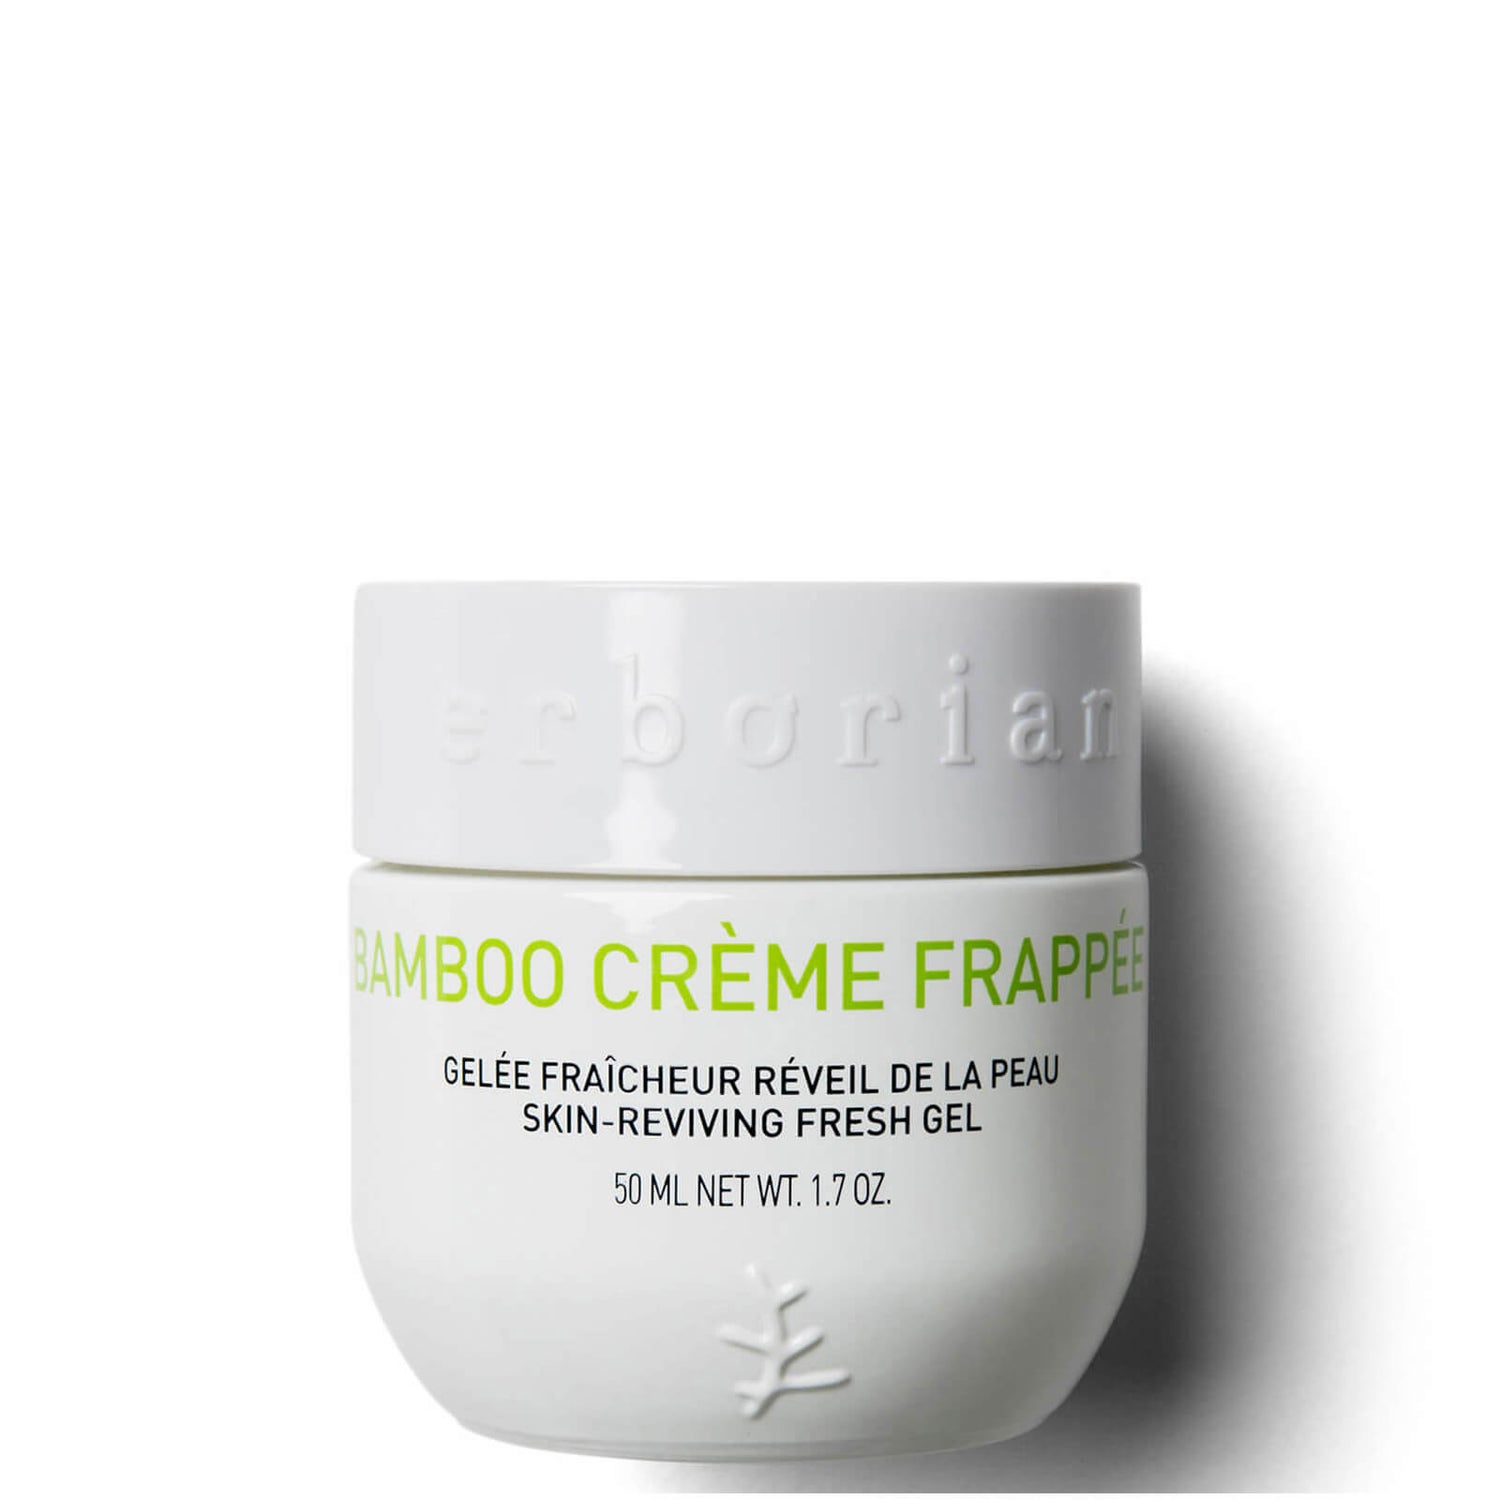 Erborian Bamboo Crème Frappée Gelée fraîcheur réveil de la peau 50ml